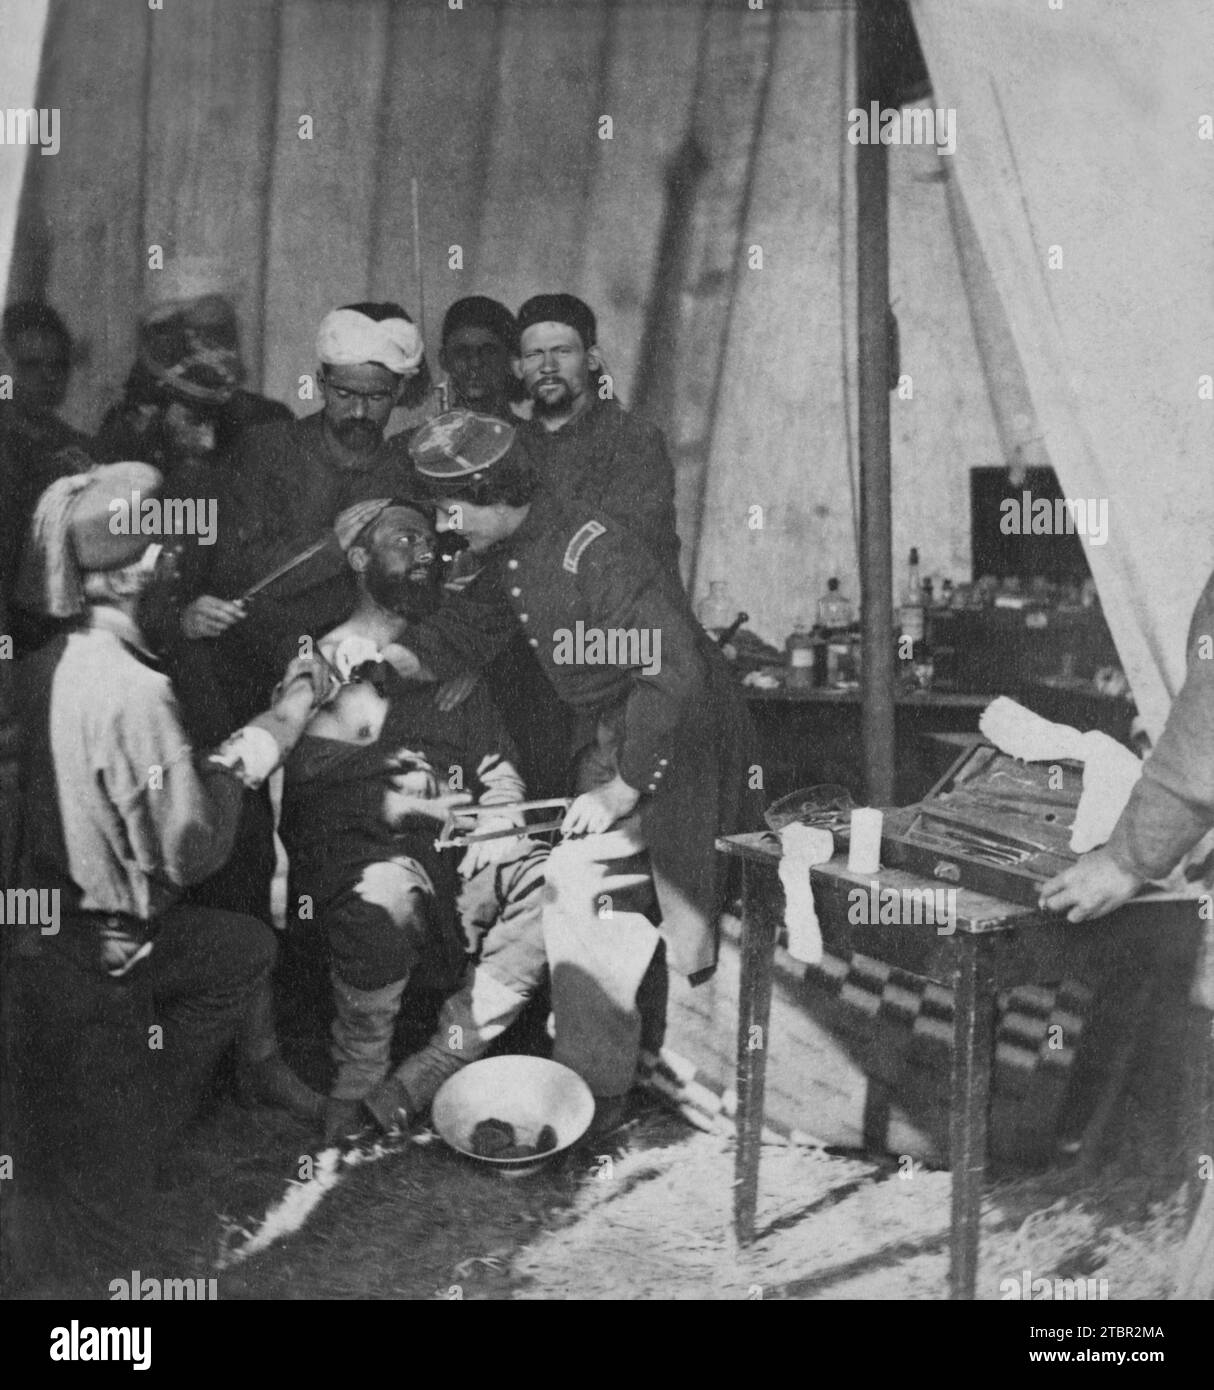 1861 : scène d'hôpital à Fortress Monroe, Virginie. Stereograph montre des soldats zouaves, peut-être du 5th New York Infantry Regiment, dans un hos de campagne Banque D'Images